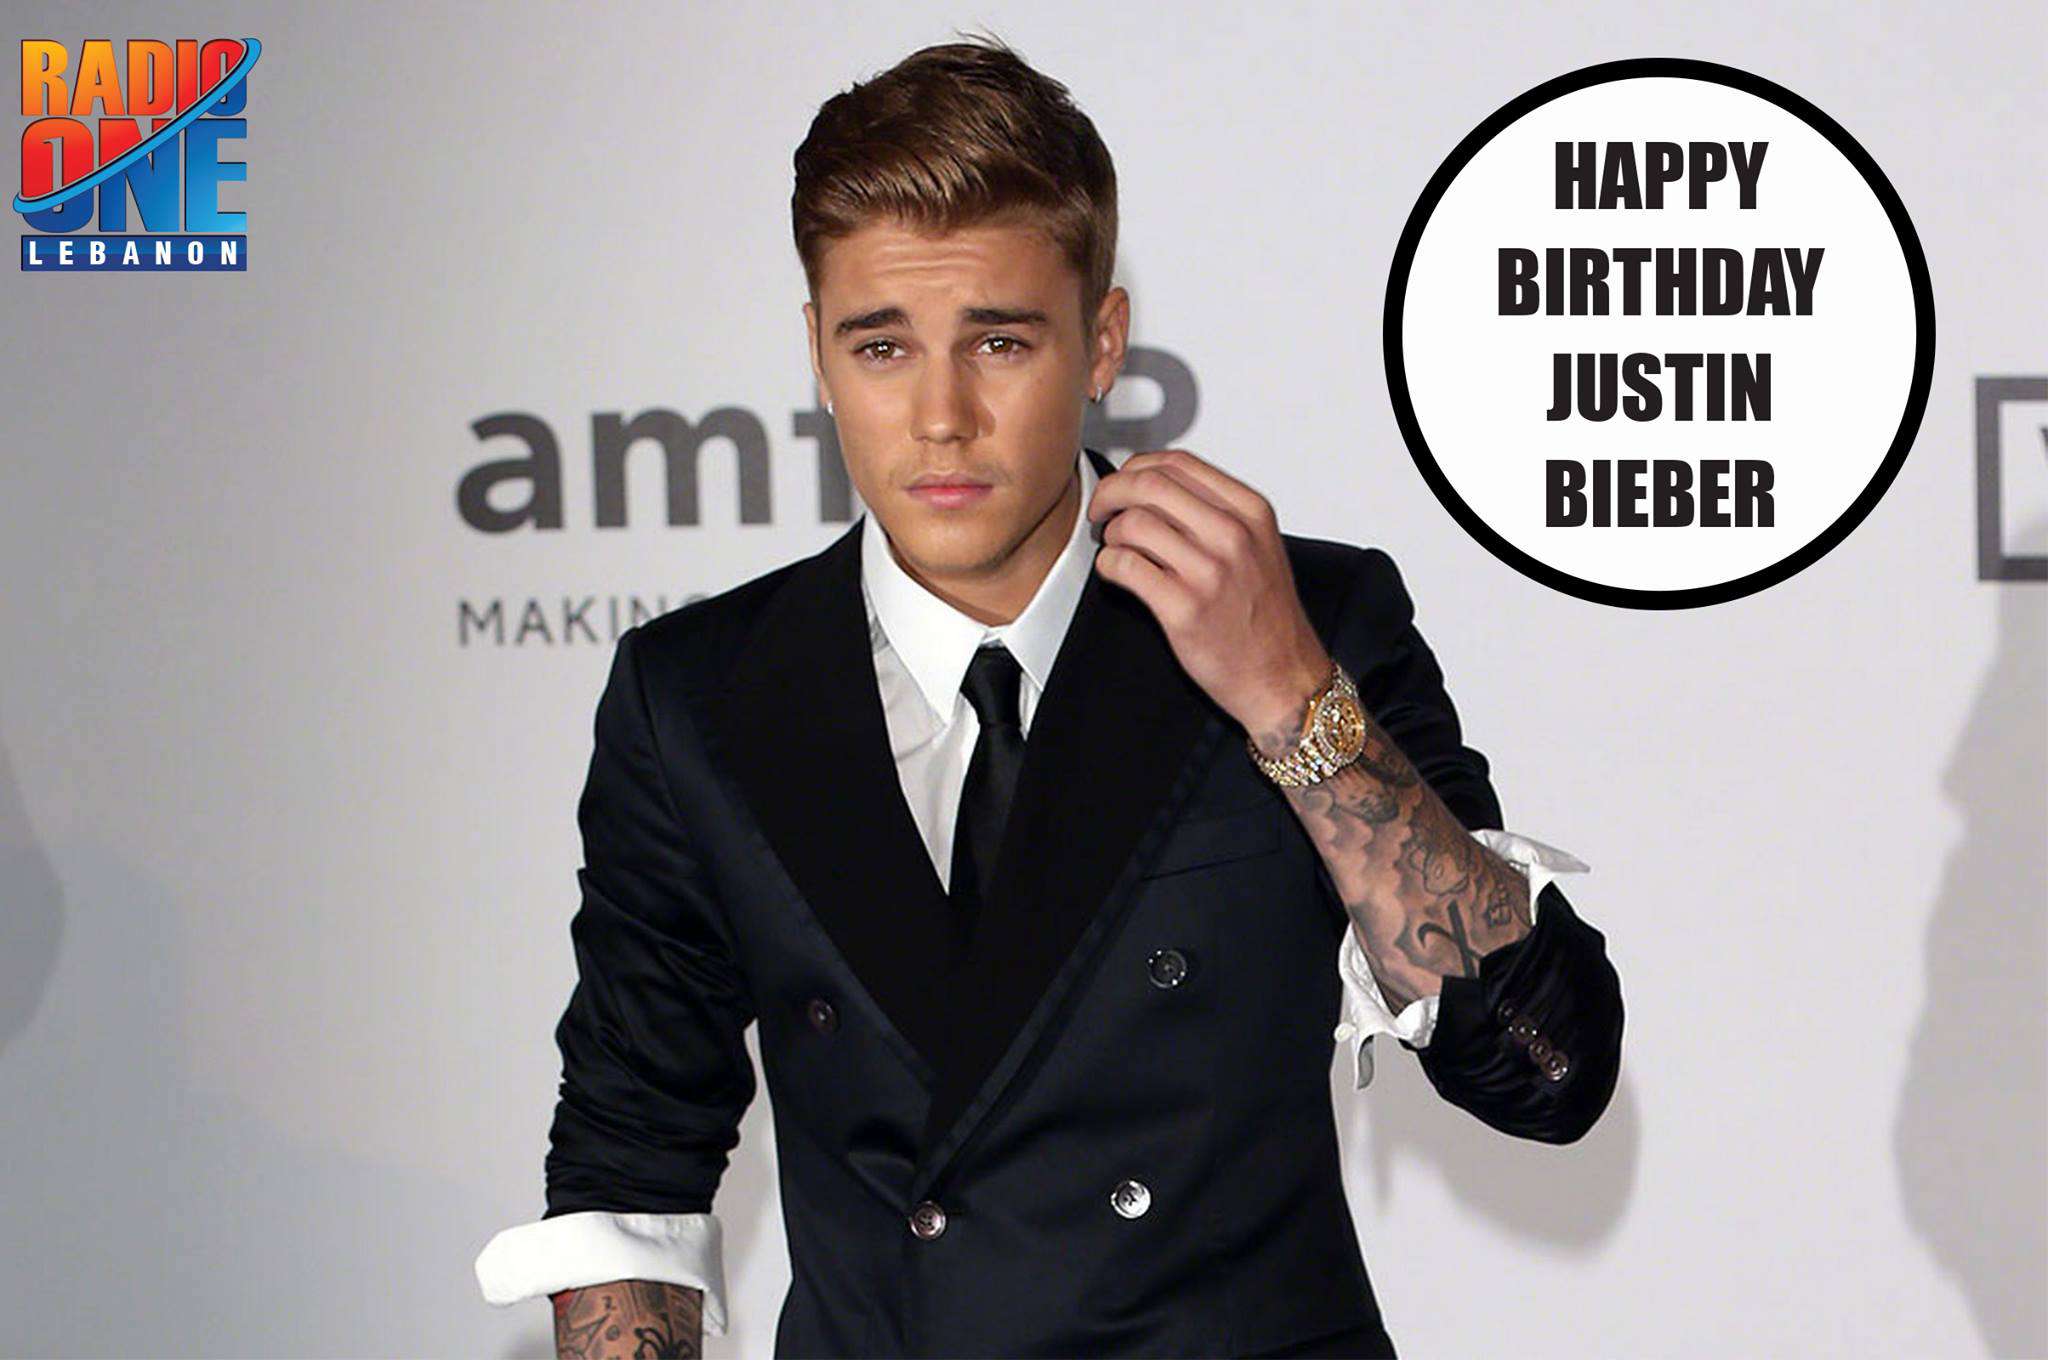 Justin Bieber's Birthday Wishes